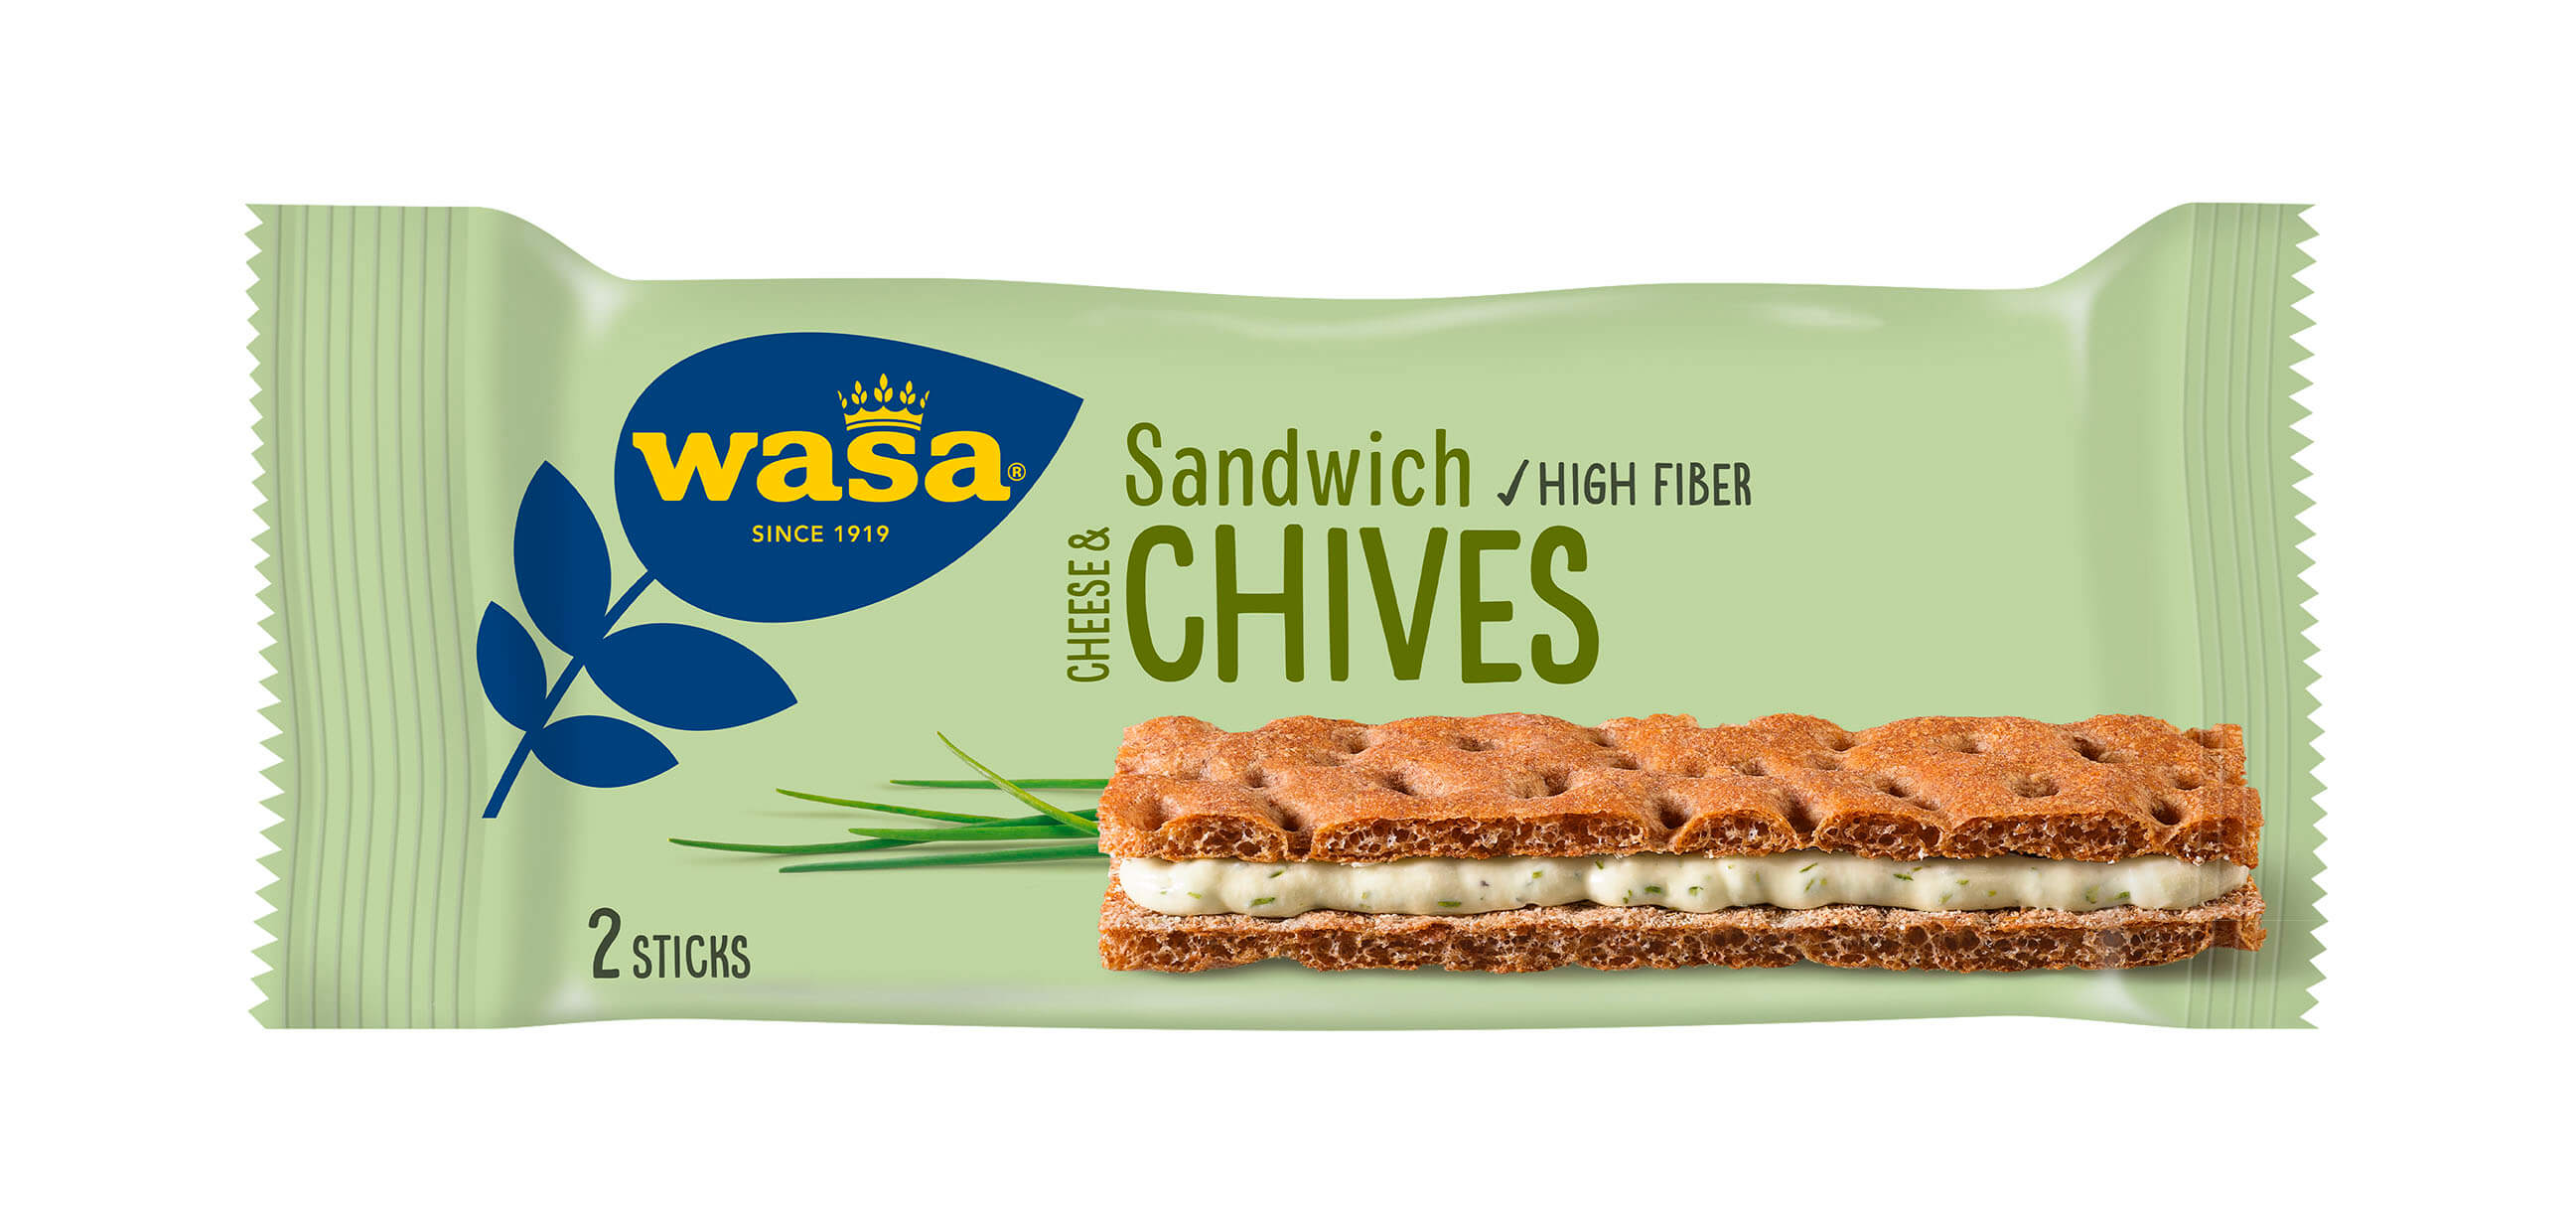 Wasa Sandwich Cheese & Chives - Upptäck det perfekta mellanmålet, gott knäckebröd med krämig fyllning. Utmärkt som ett lätt mellanmål på språng - perfekt för dig som söker tips på matiga mellanmål för barn och vuxna